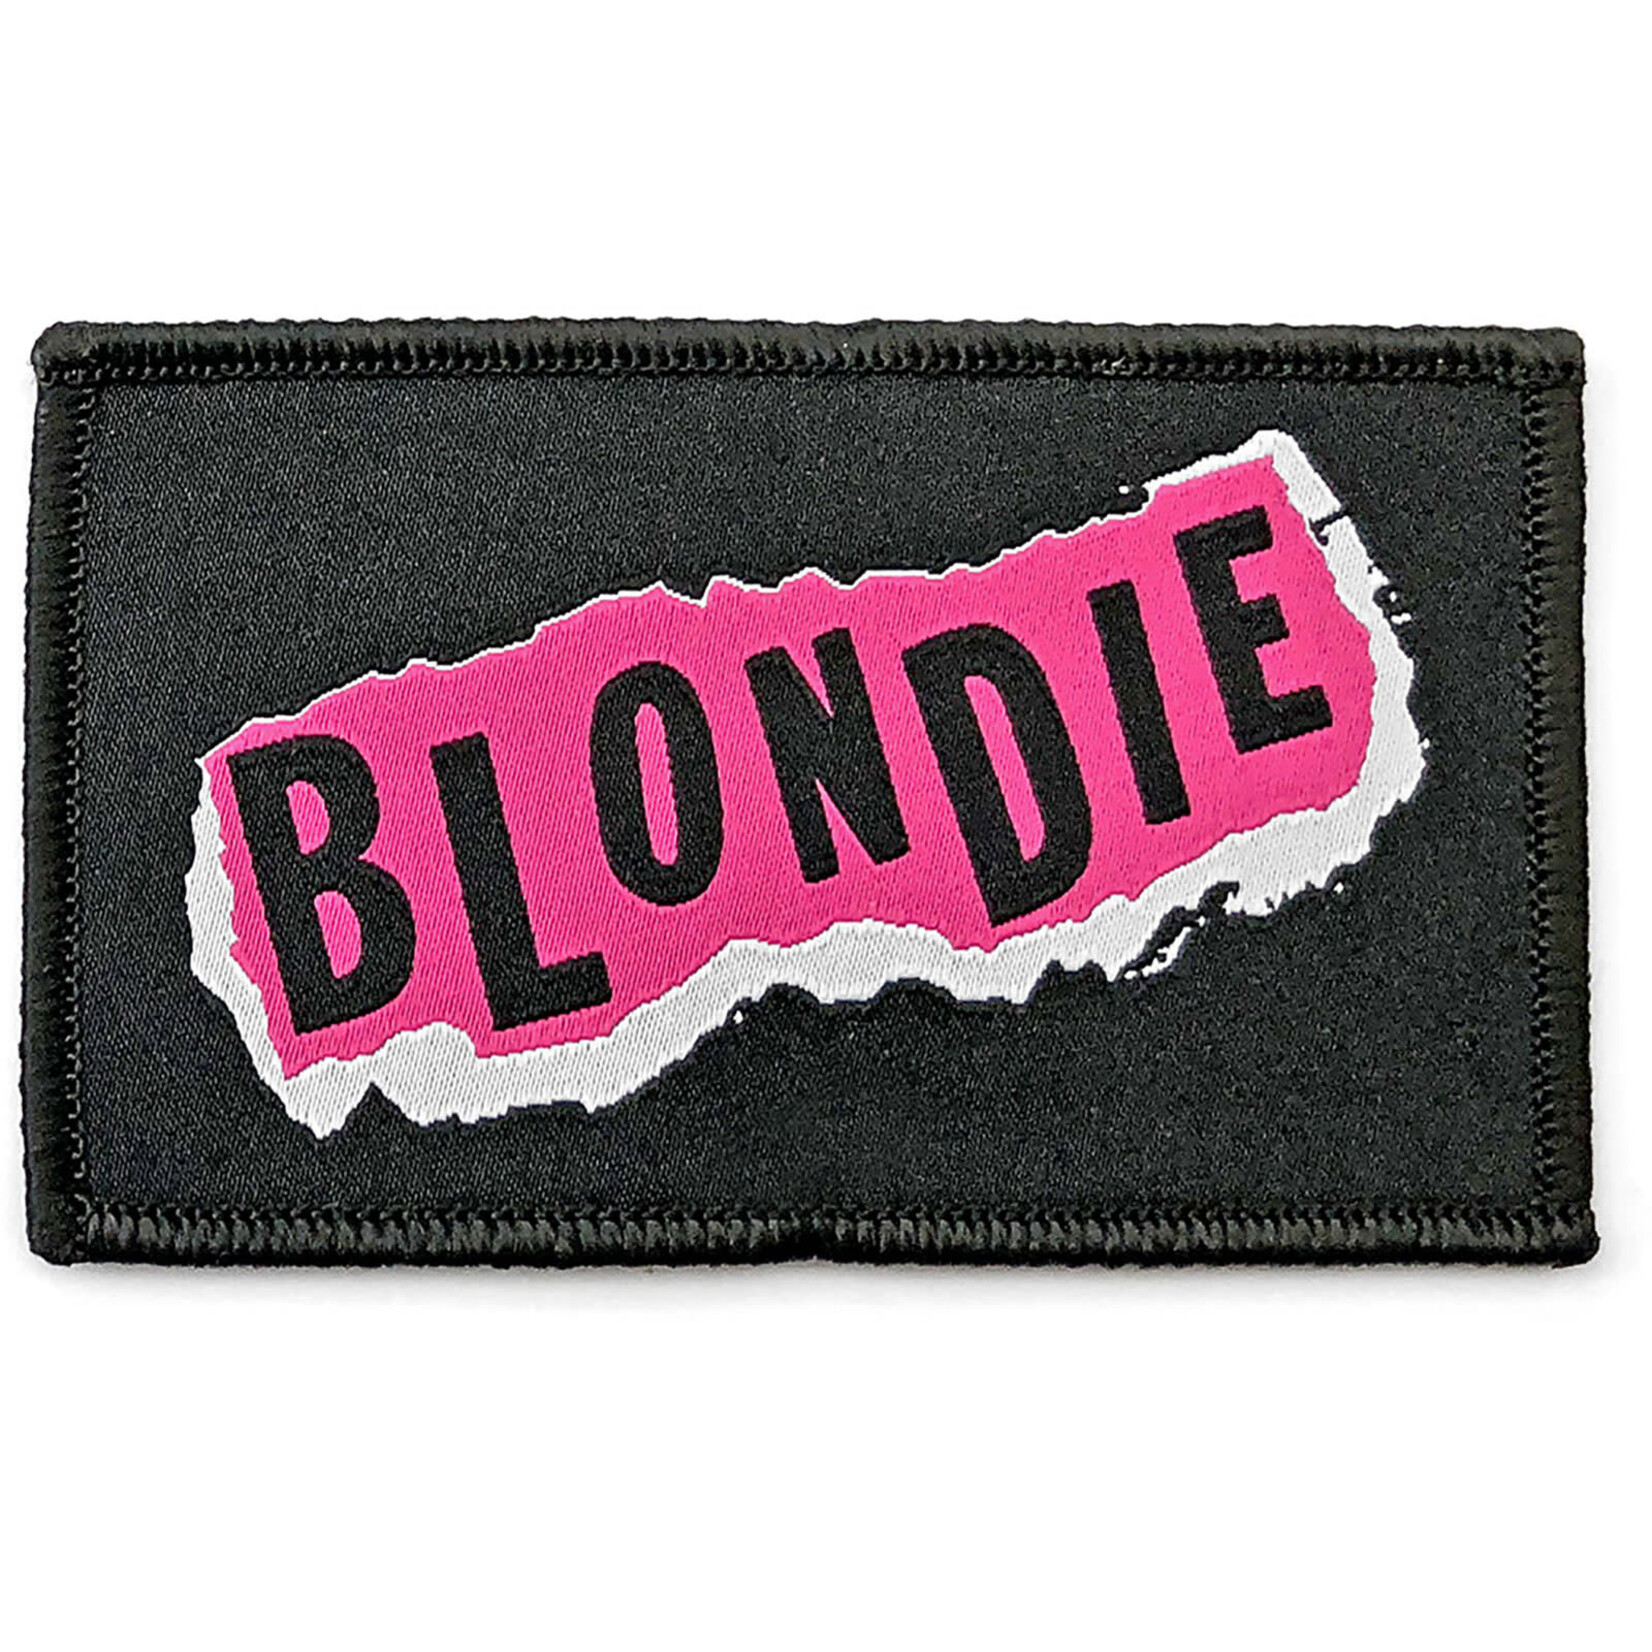 Patch - Blondie: Punk Logo